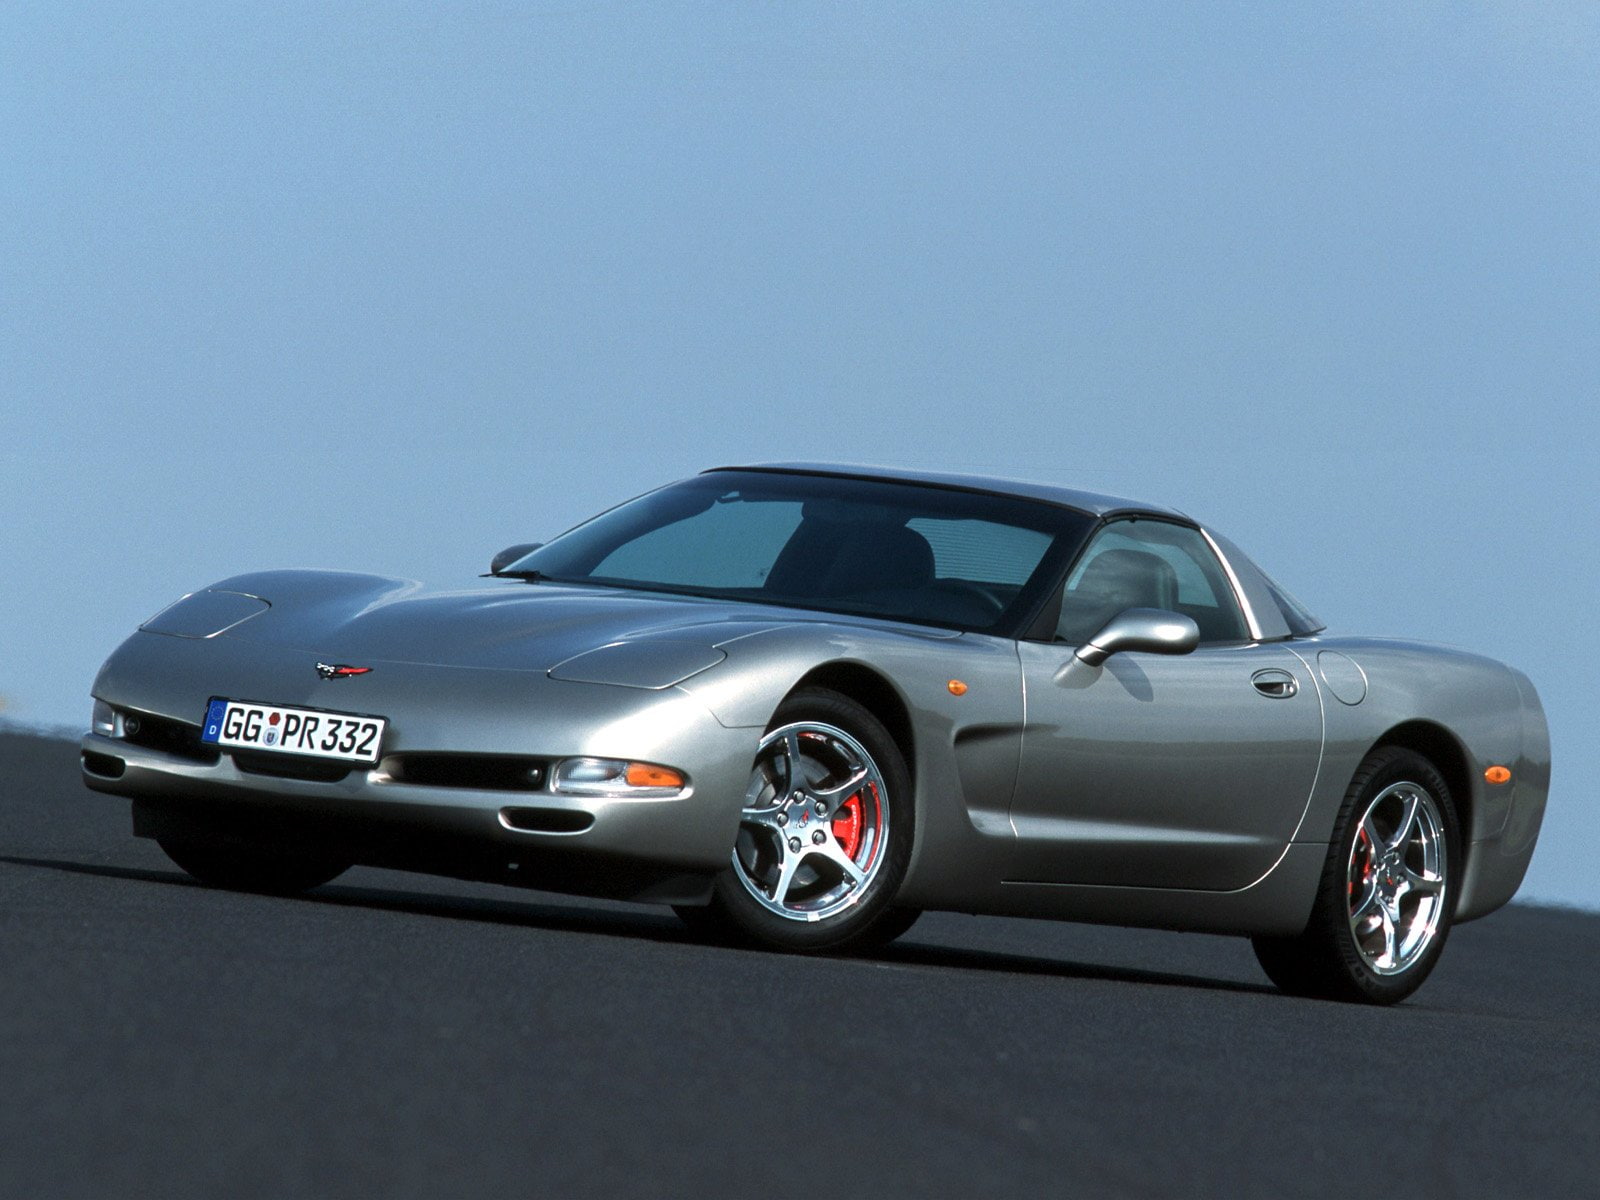 1997 04, c 5, chevrolet, corvette, coupe, eu spec, muscle, supercar